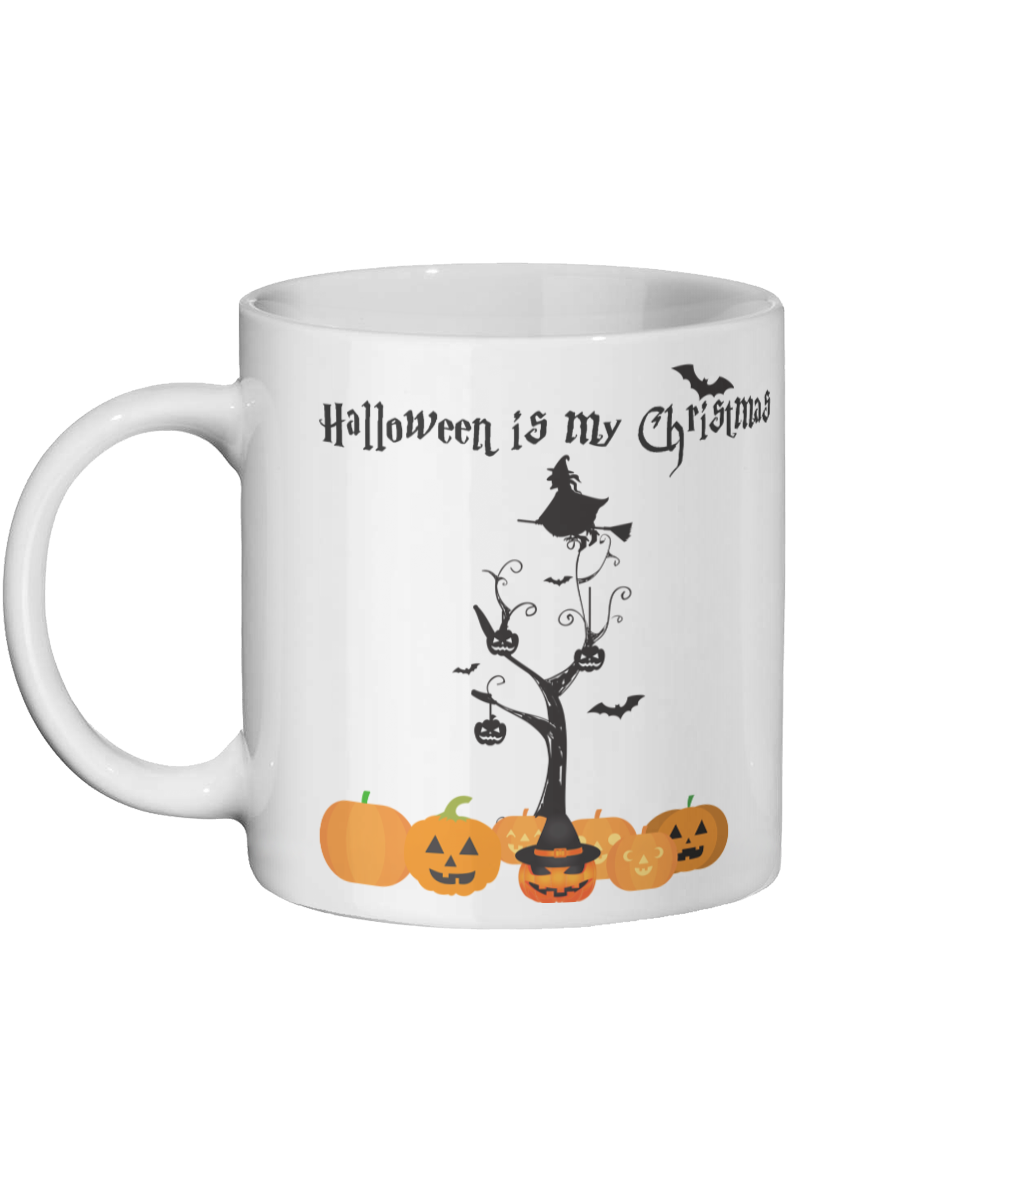 Halloween is my Christmas Mug-Left-side-3.png